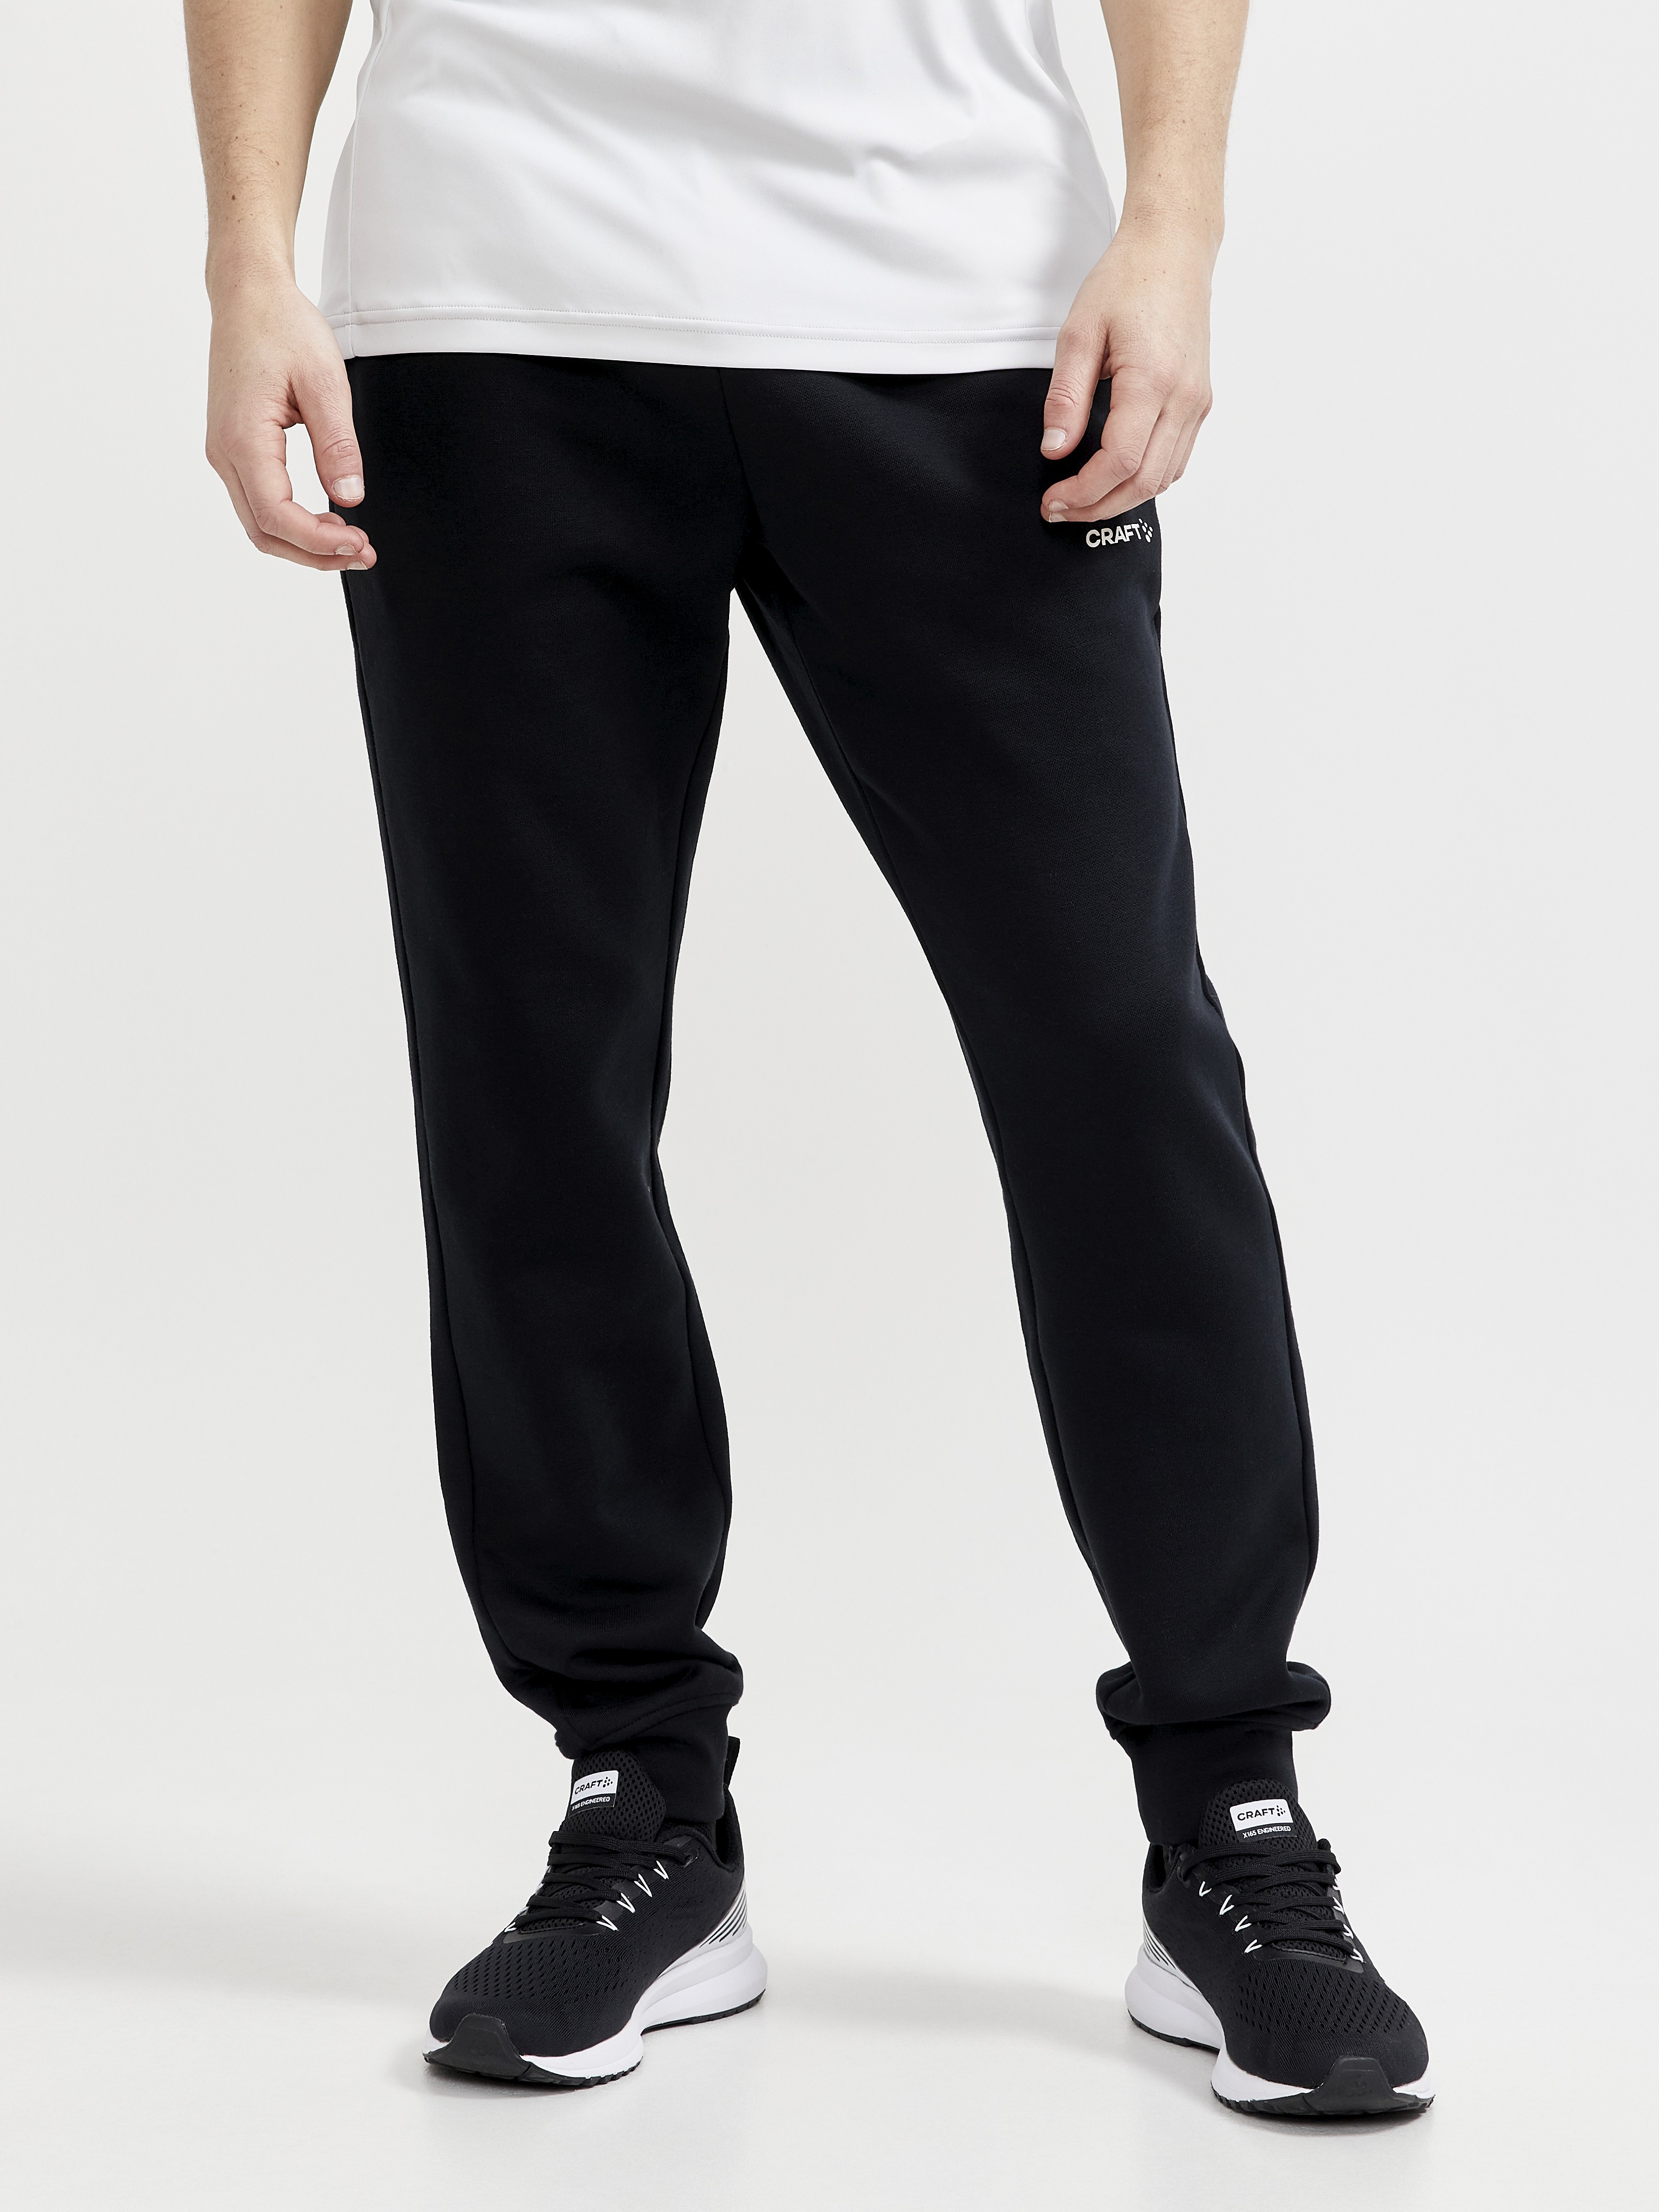 brandwond aantrekken Jolly CORE Craft Sweatpants M - Black | Craft Sportswear